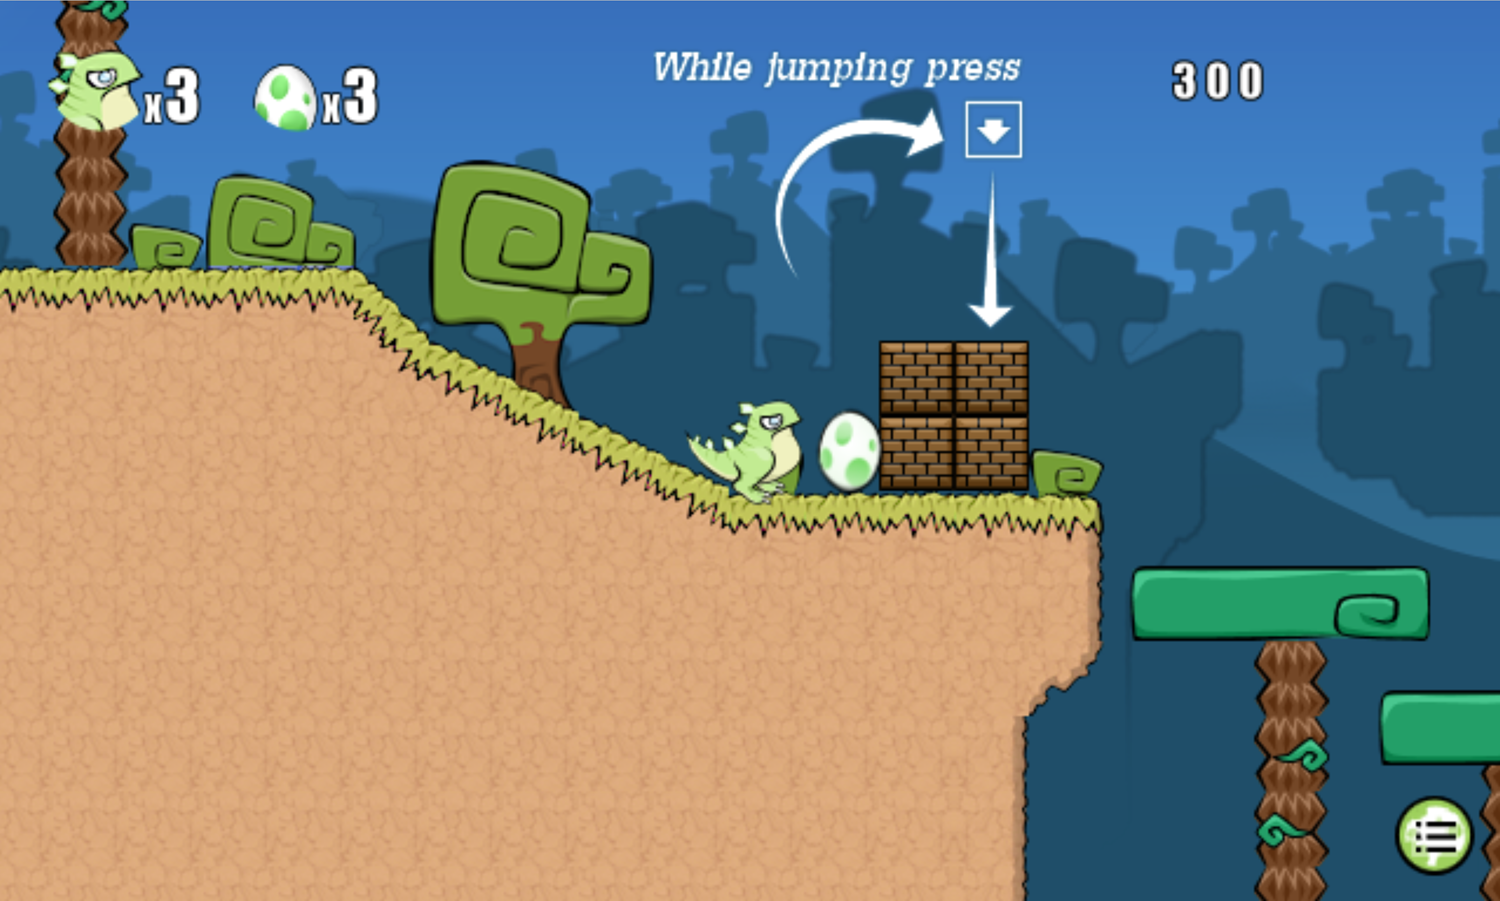 Bugongo Bouncy Jungle Game Jump Smash Instructions Screen Screenshot.